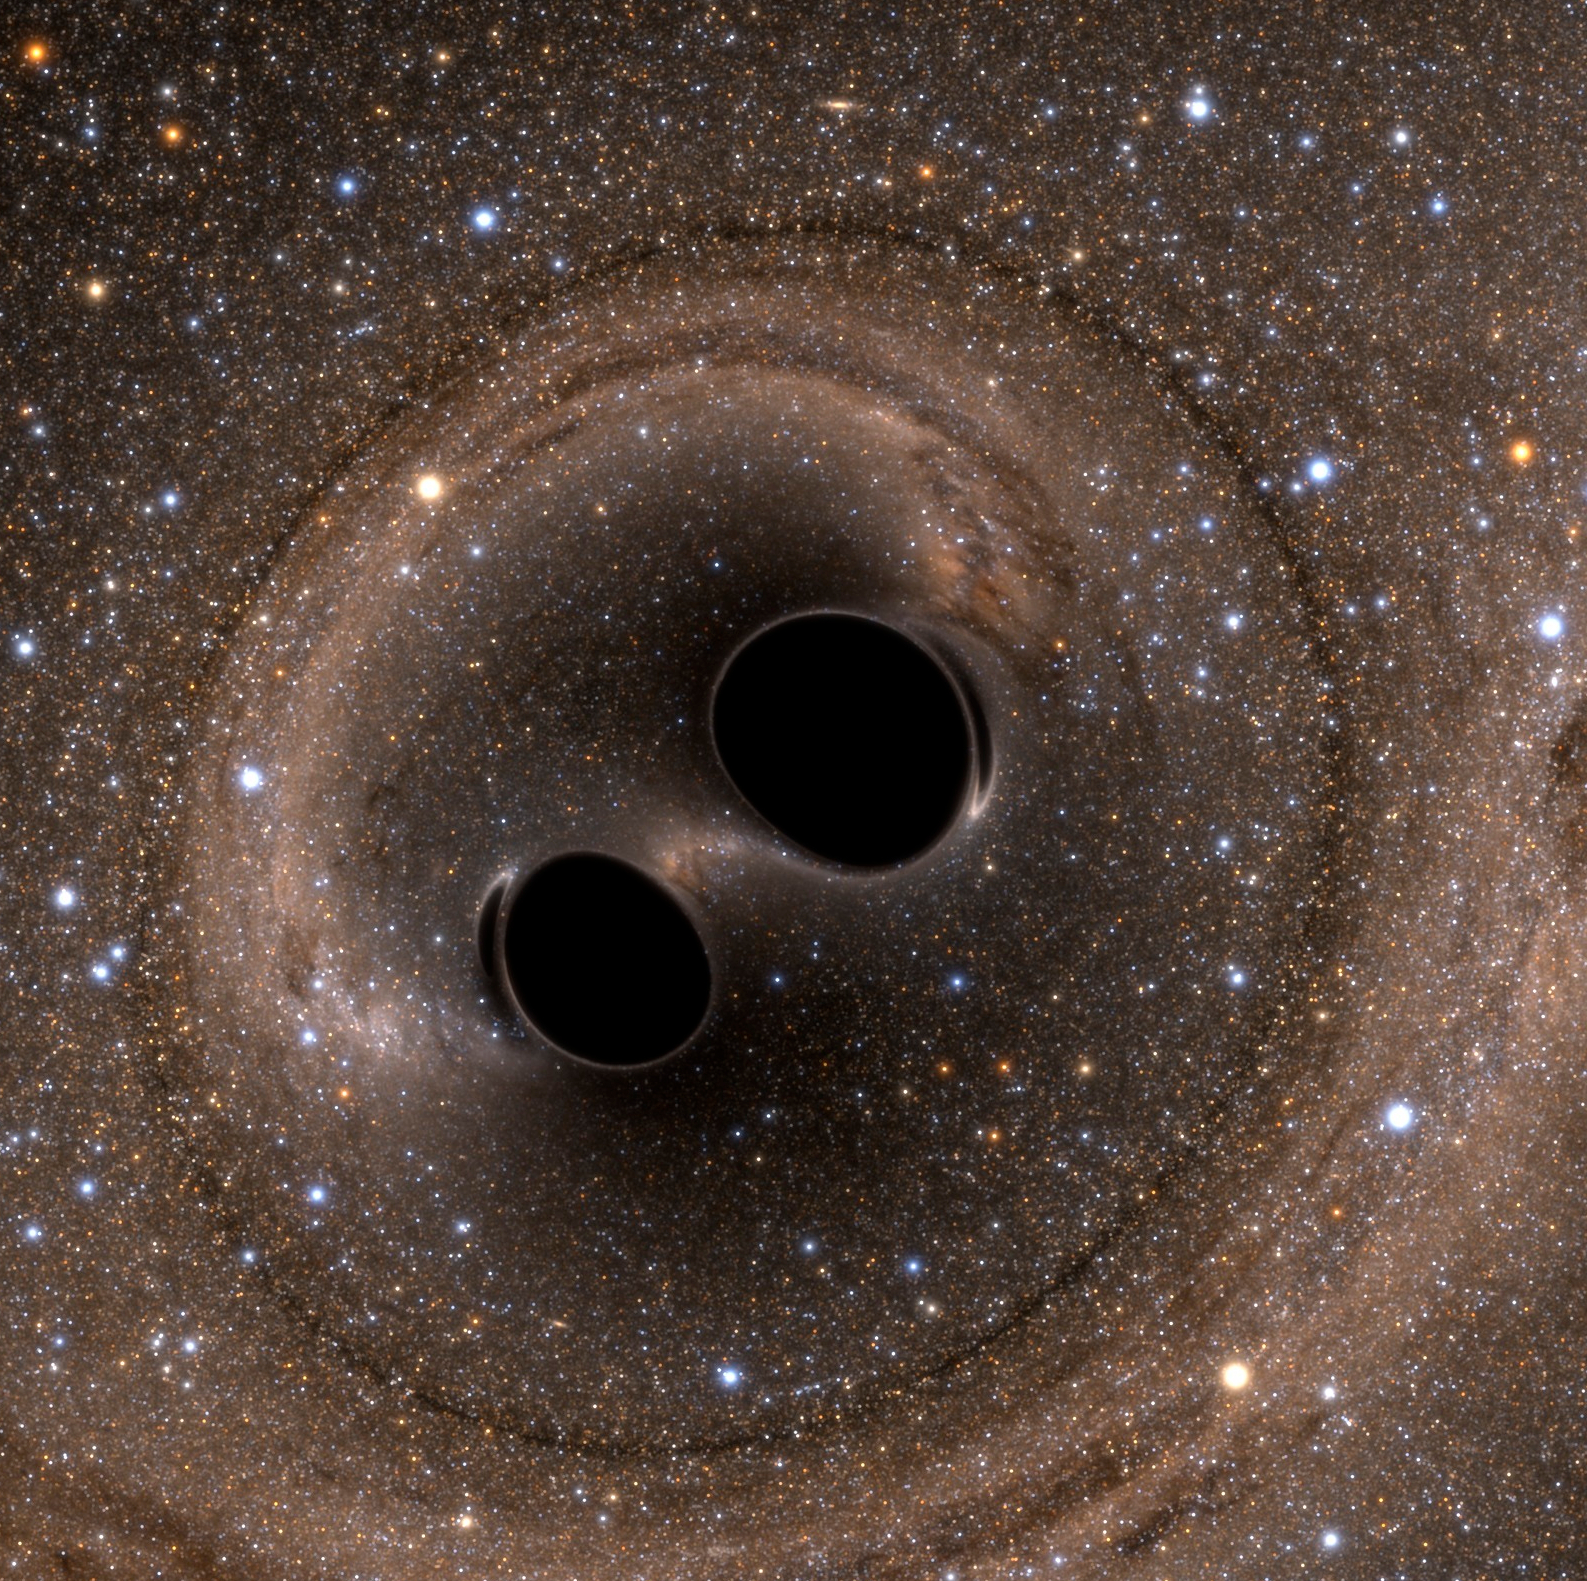 Zwei schwarze Löcher, die wirklich schwarz und nah beieinander sind. Der Sternenhintergrund um sie herum wirkt verquirlt.